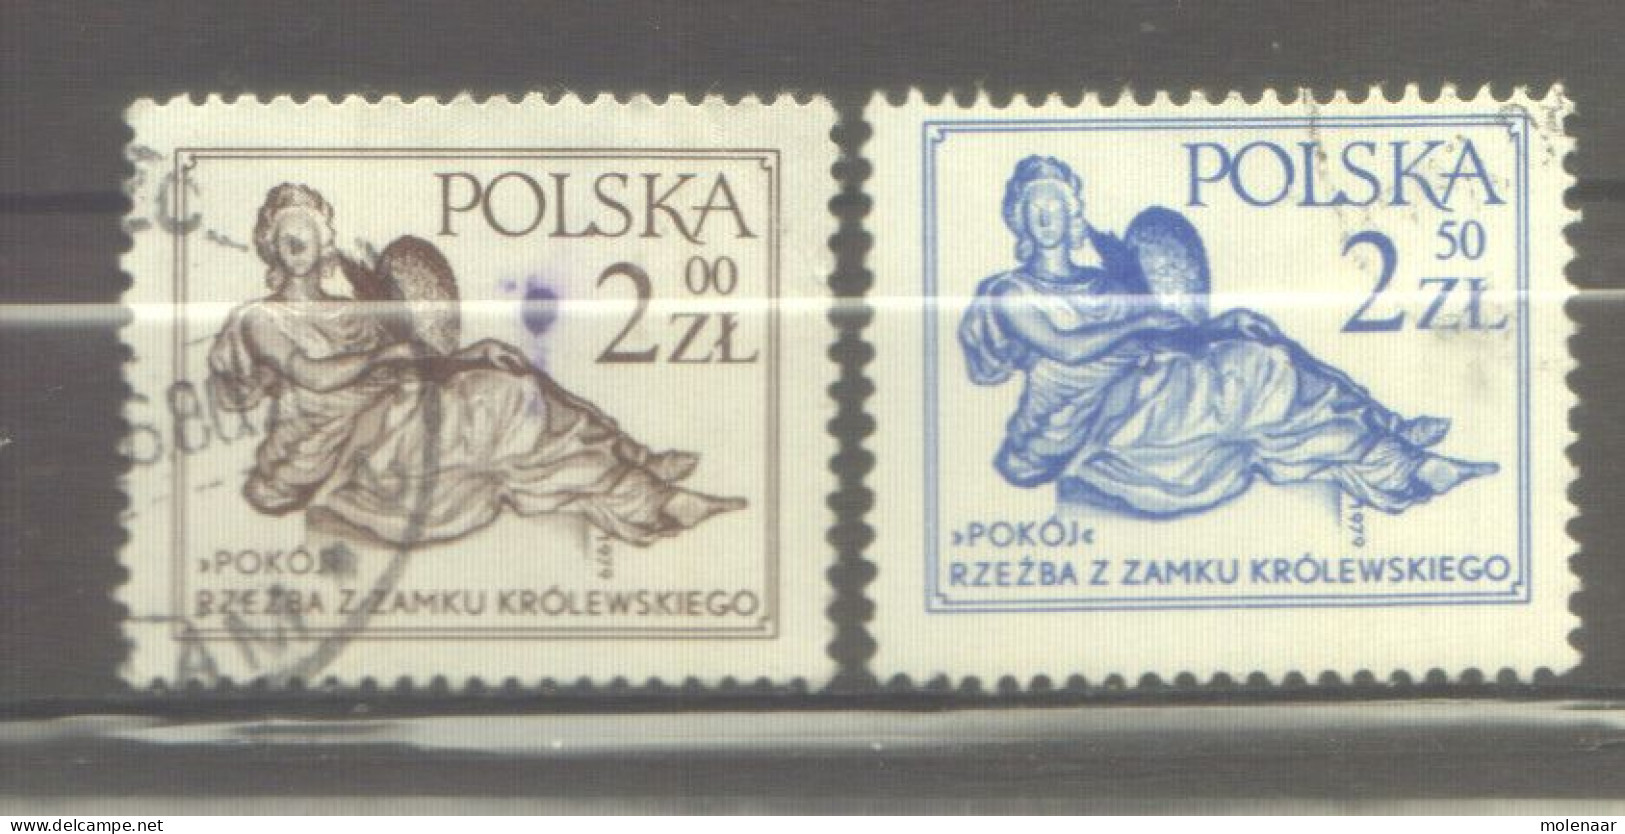 Postzegels > Europa > Polen > 1944-.... Republiek > 1971-80 > Gebruikt  2652-2653 (12176) - Usati